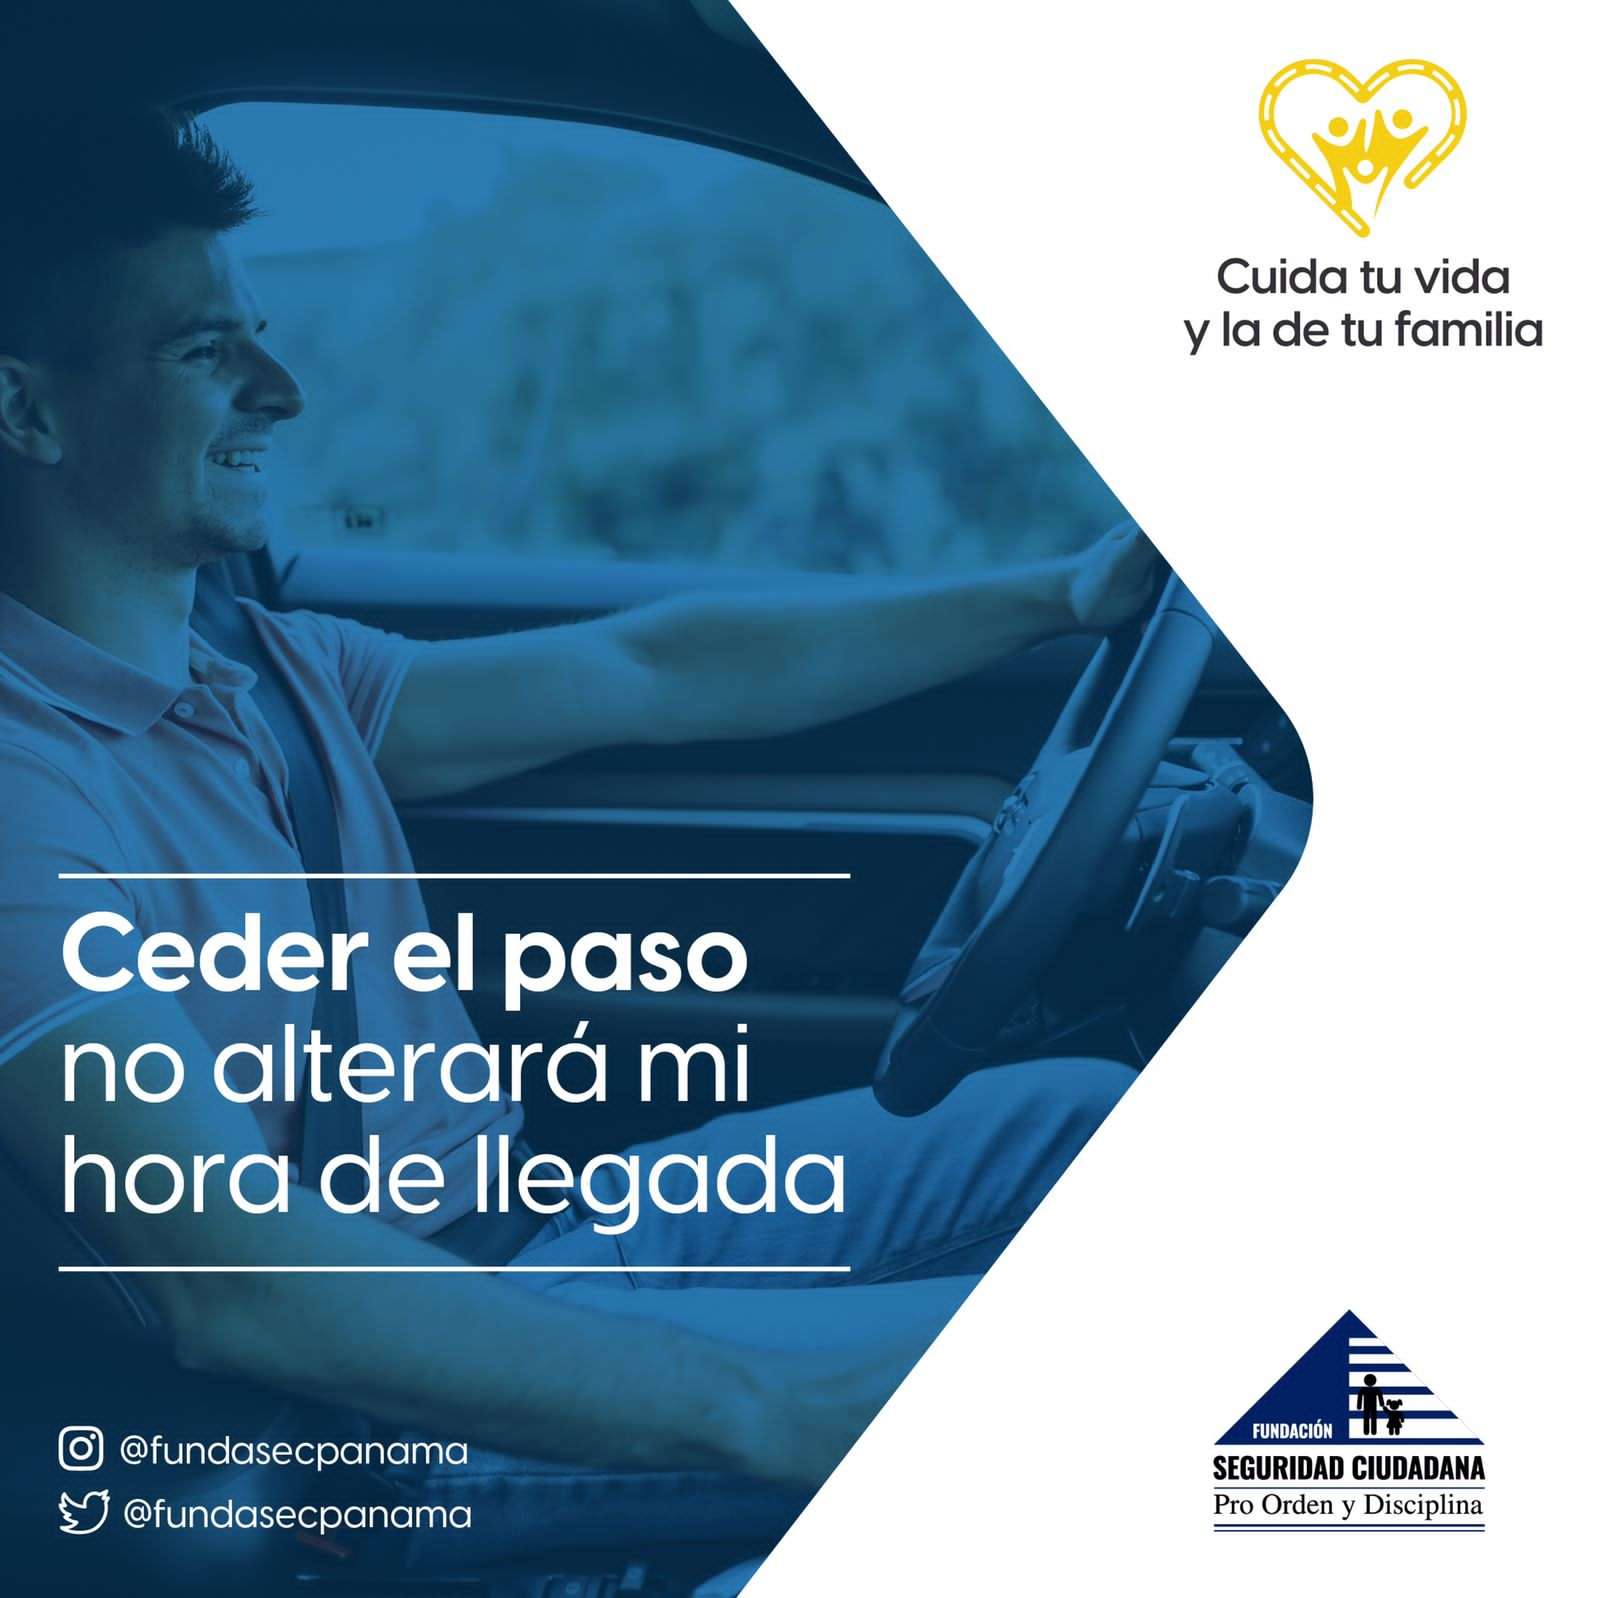 La campaña de seguridad vial cuyo lema es &quot;Cuida Tu Vida y la de Tu Familia” fue lanzada por la Fundación Seguridad Ciudadana Pro Orden y Disciplina (Fundasec)